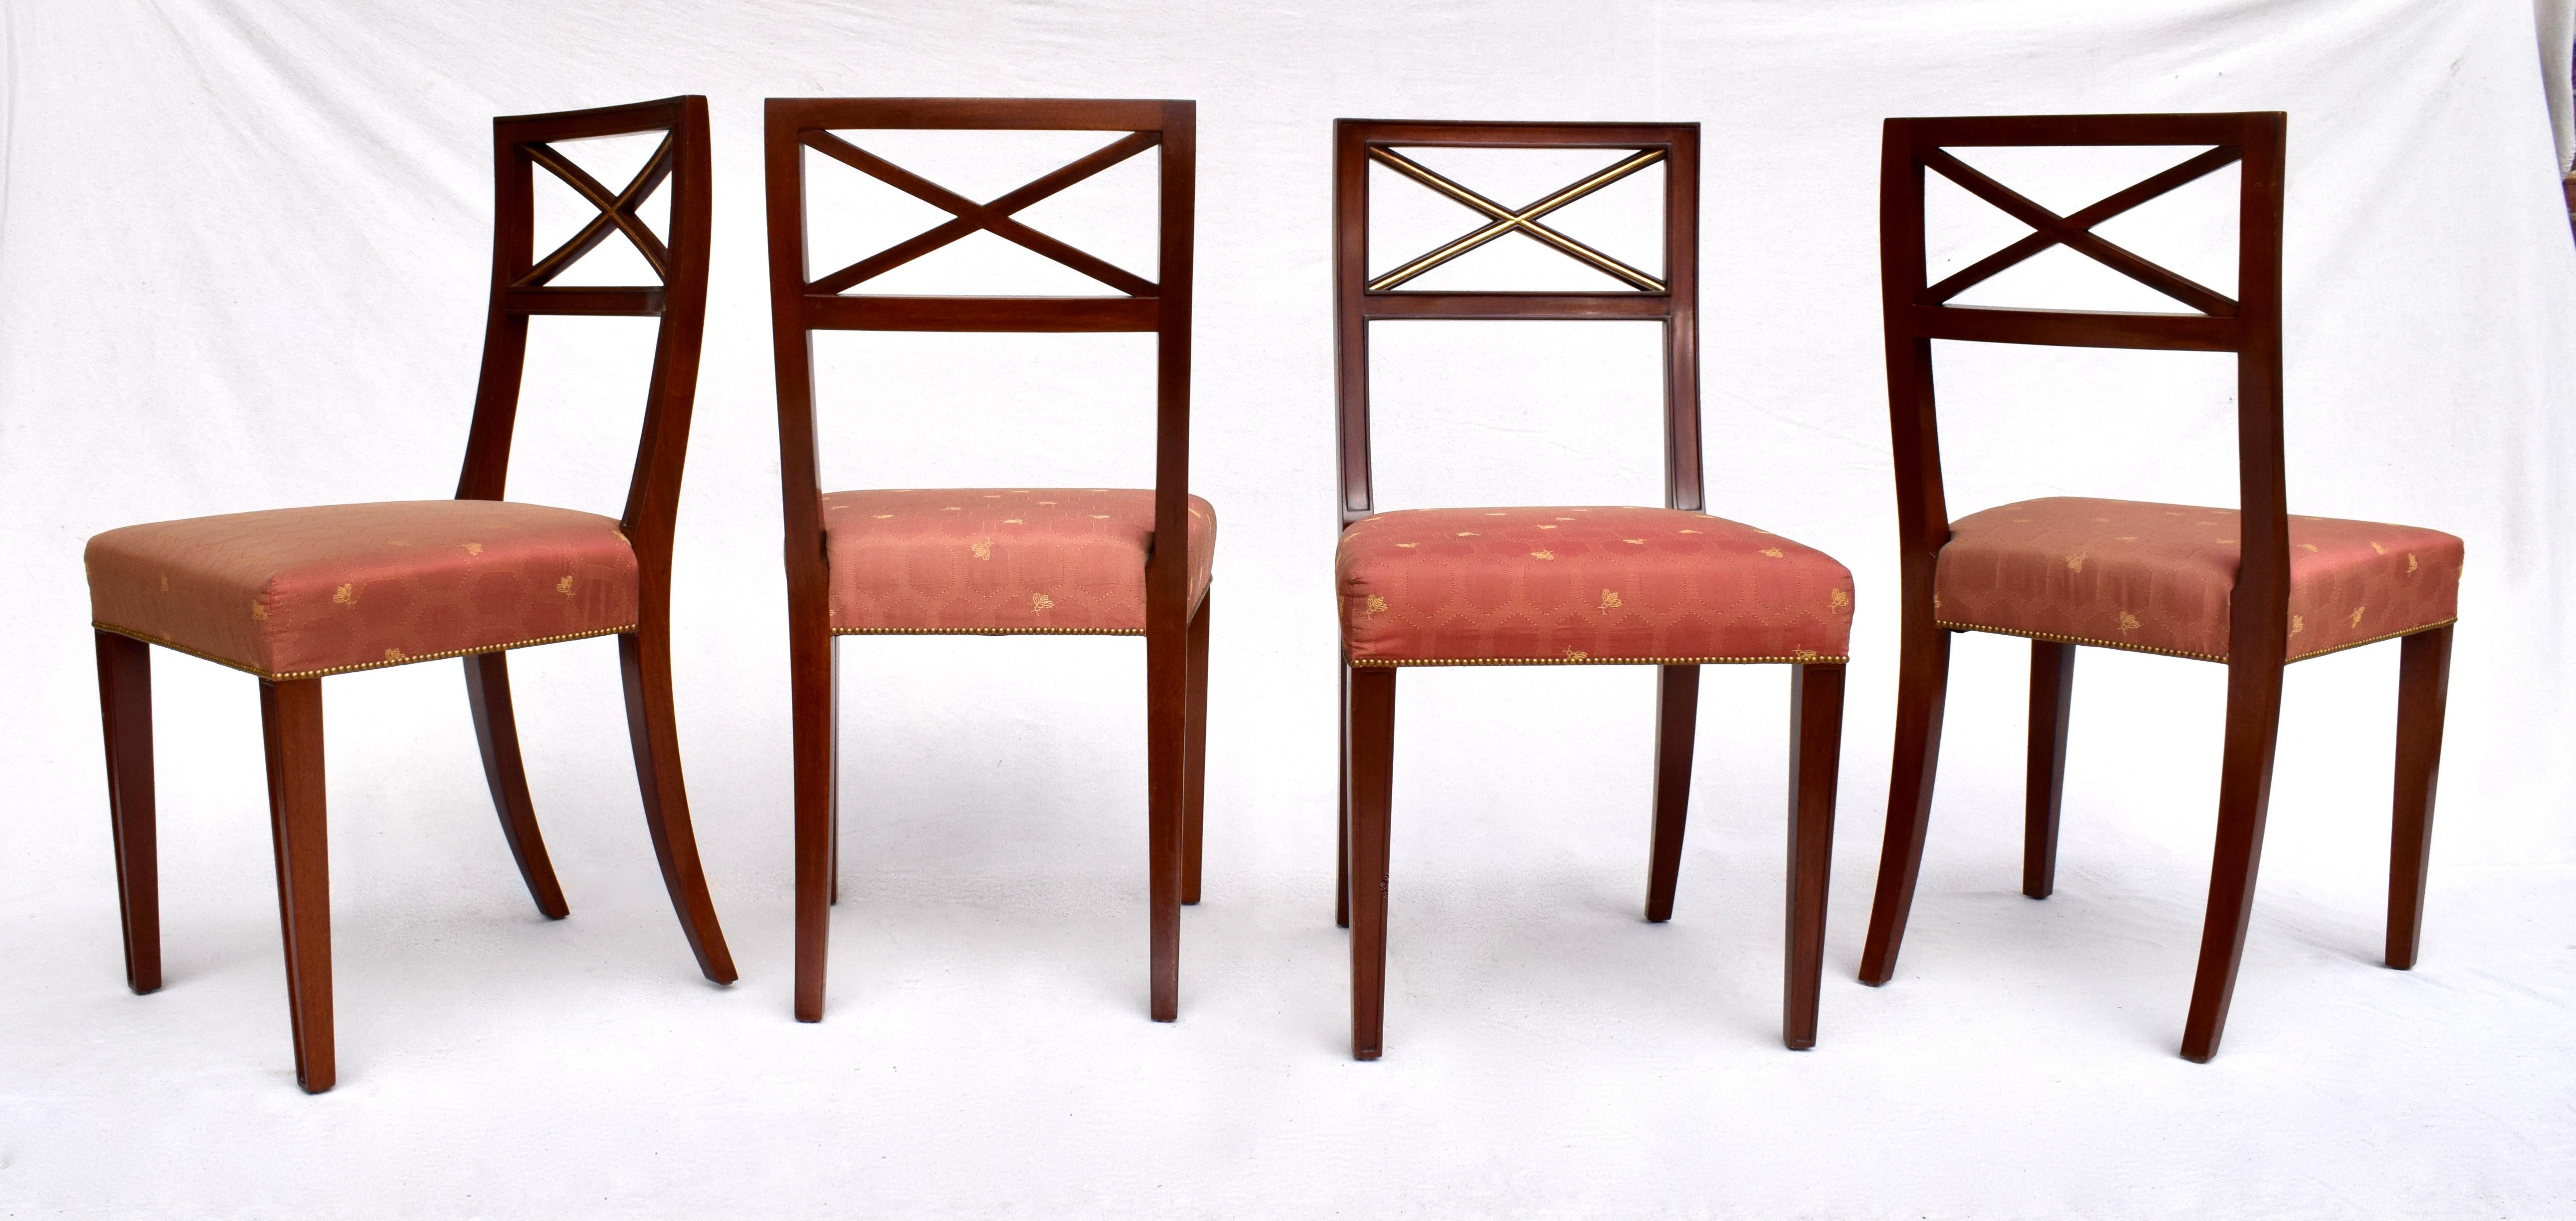 Ein auffälliger Satz von sechs massiven Mahagoni-Paket vergoldet  Esszimmerstühle mit X-Rückenlehne und ausgeprägten Designelementen, wie sie in den Werken von Thomas Fasan für Baker & Tommi Parzinger zu finden sind. Enthält zwei raffiniert